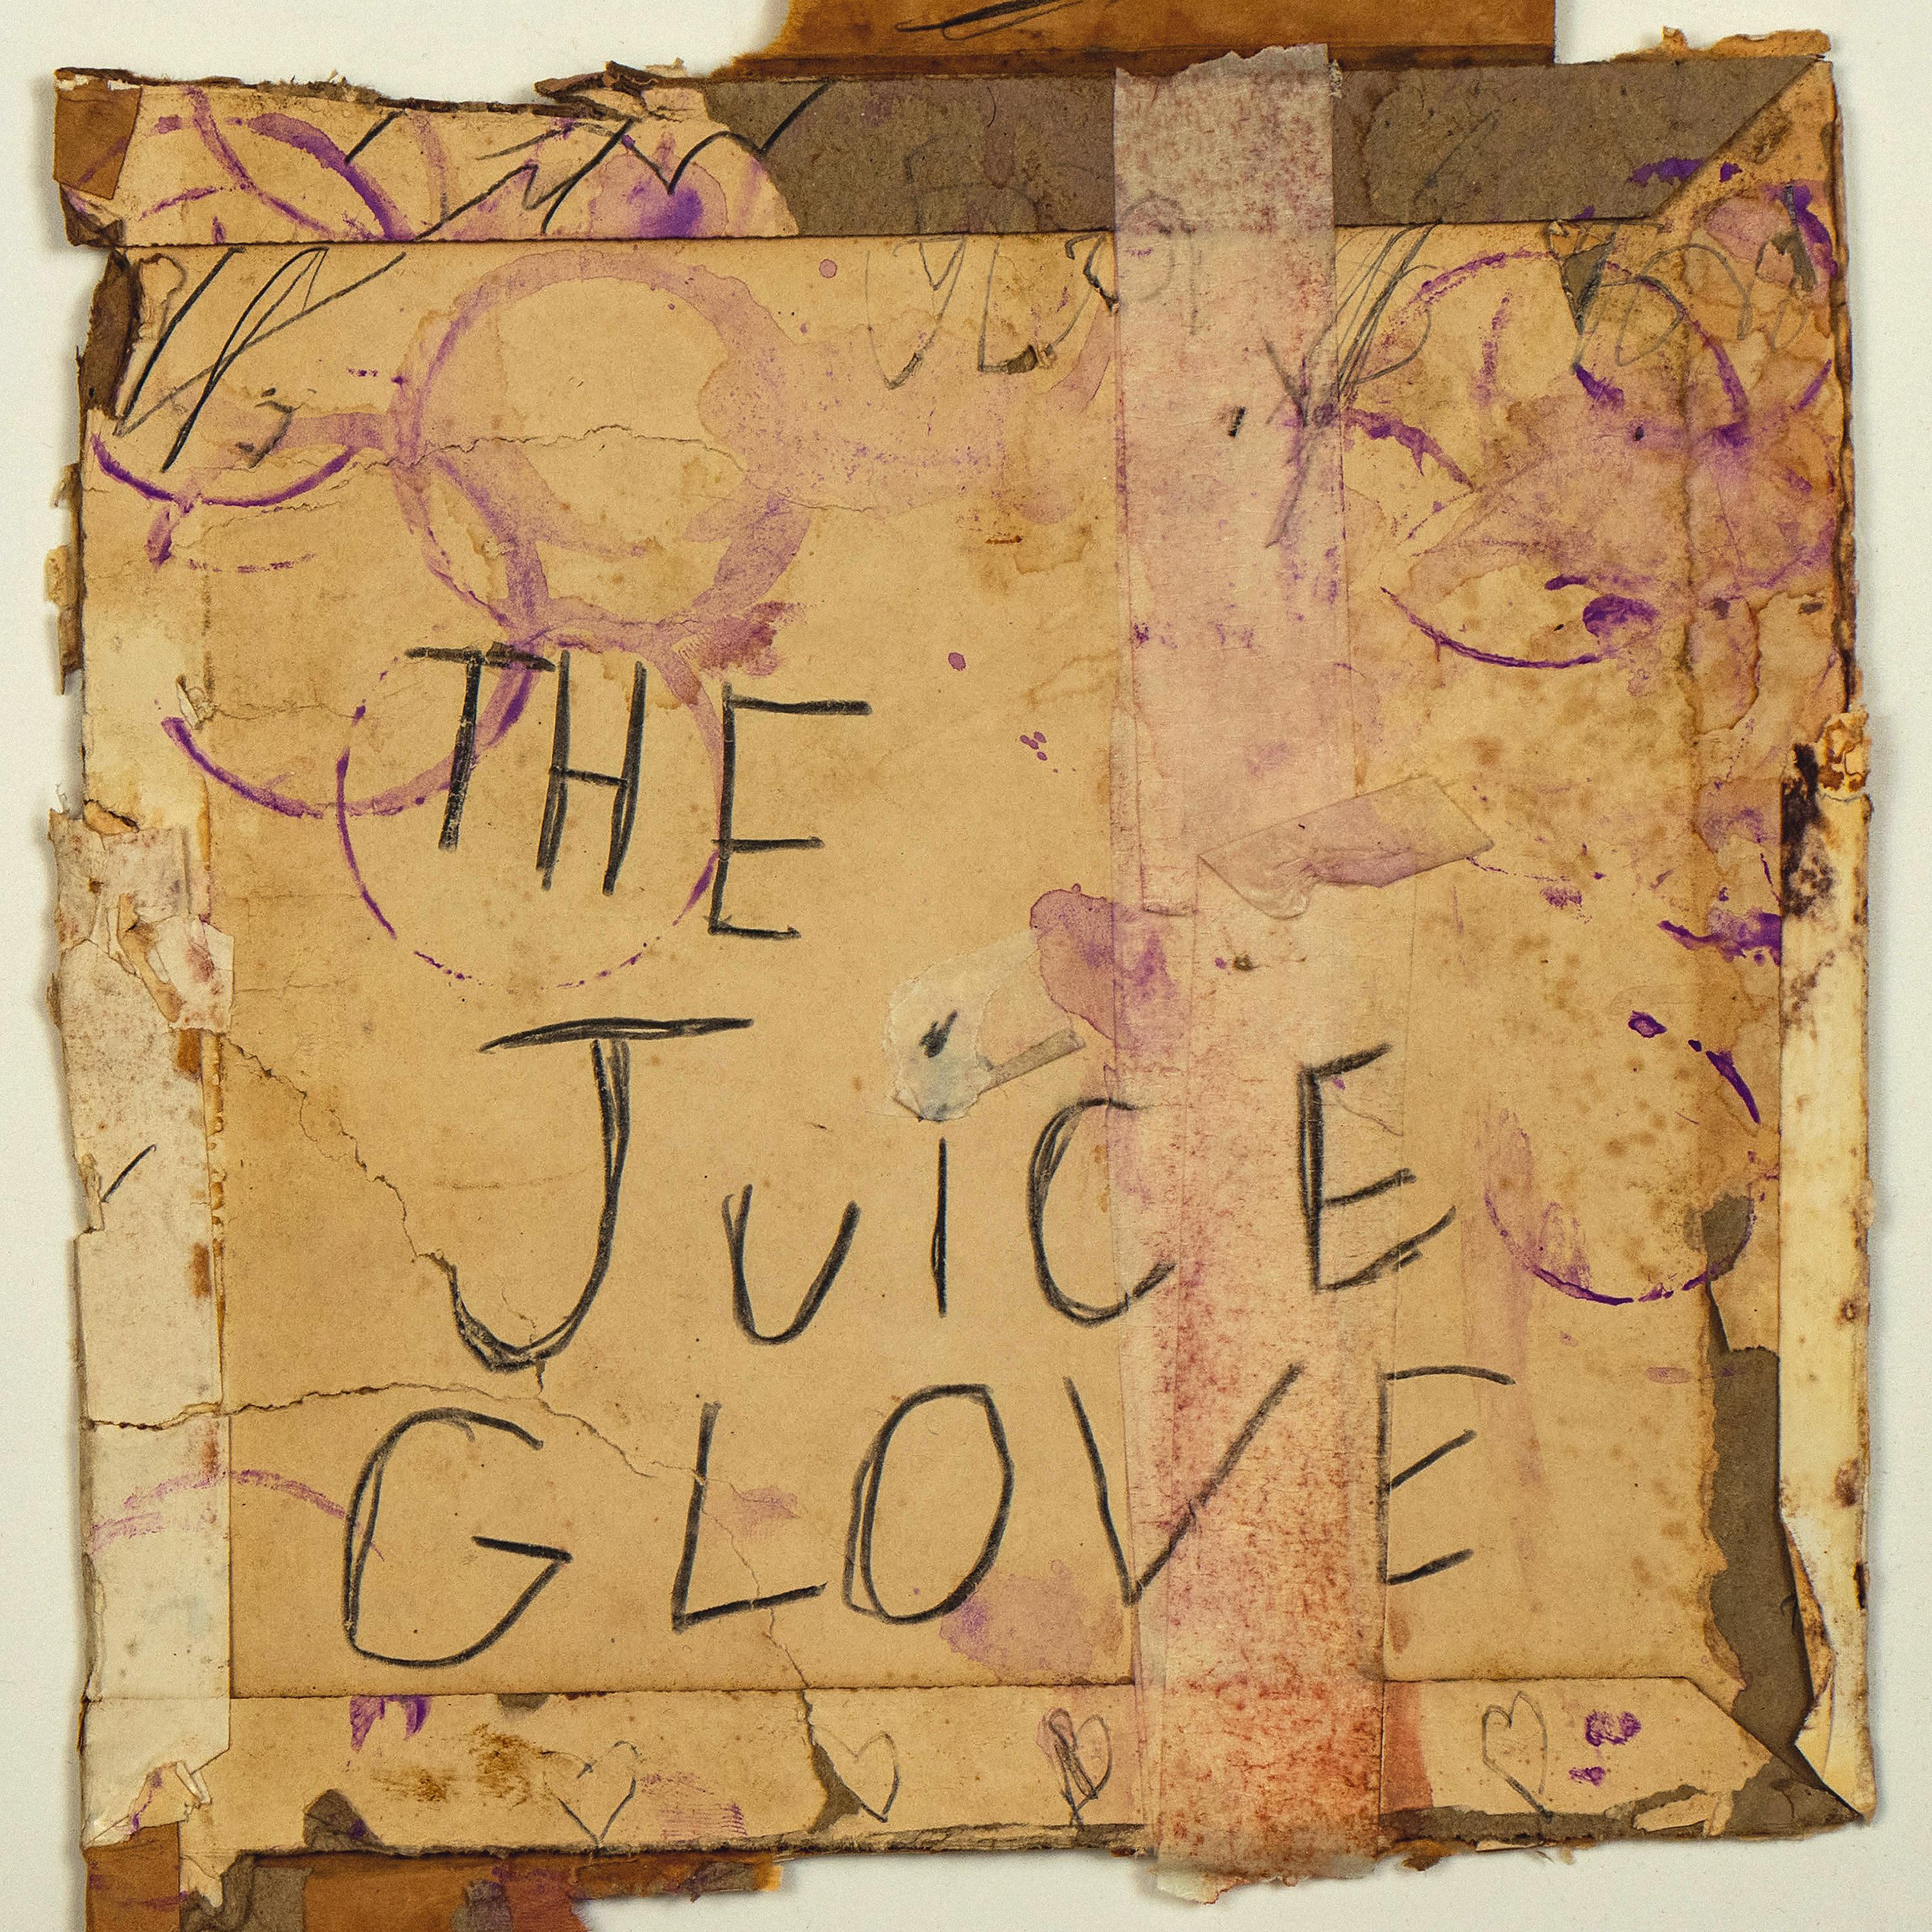 Постер альбома The Juice